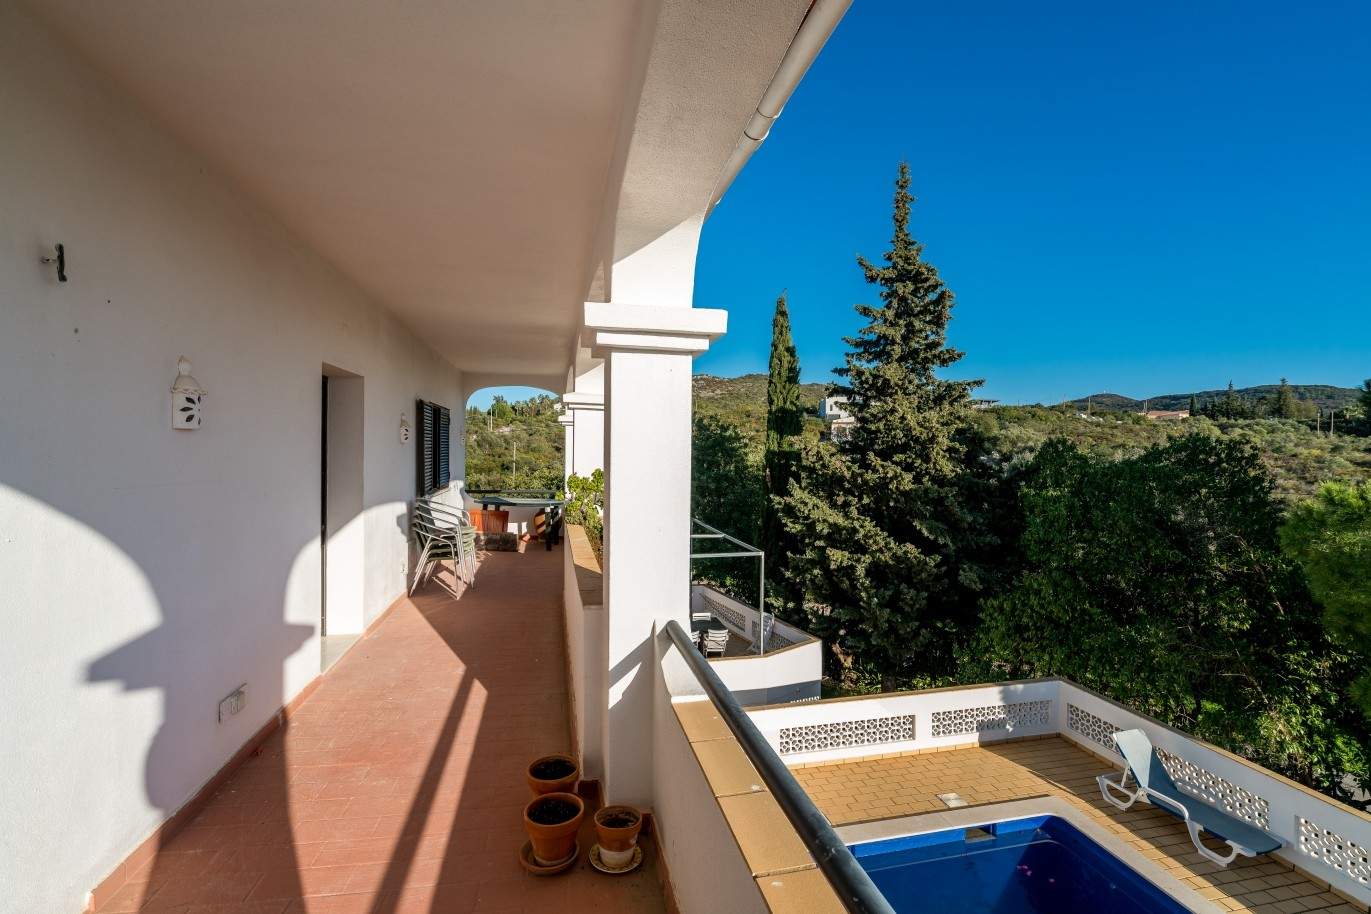 Propriedade à venda, piscina, vista mar, Santa Bárbara Nexe, Algarve_72142